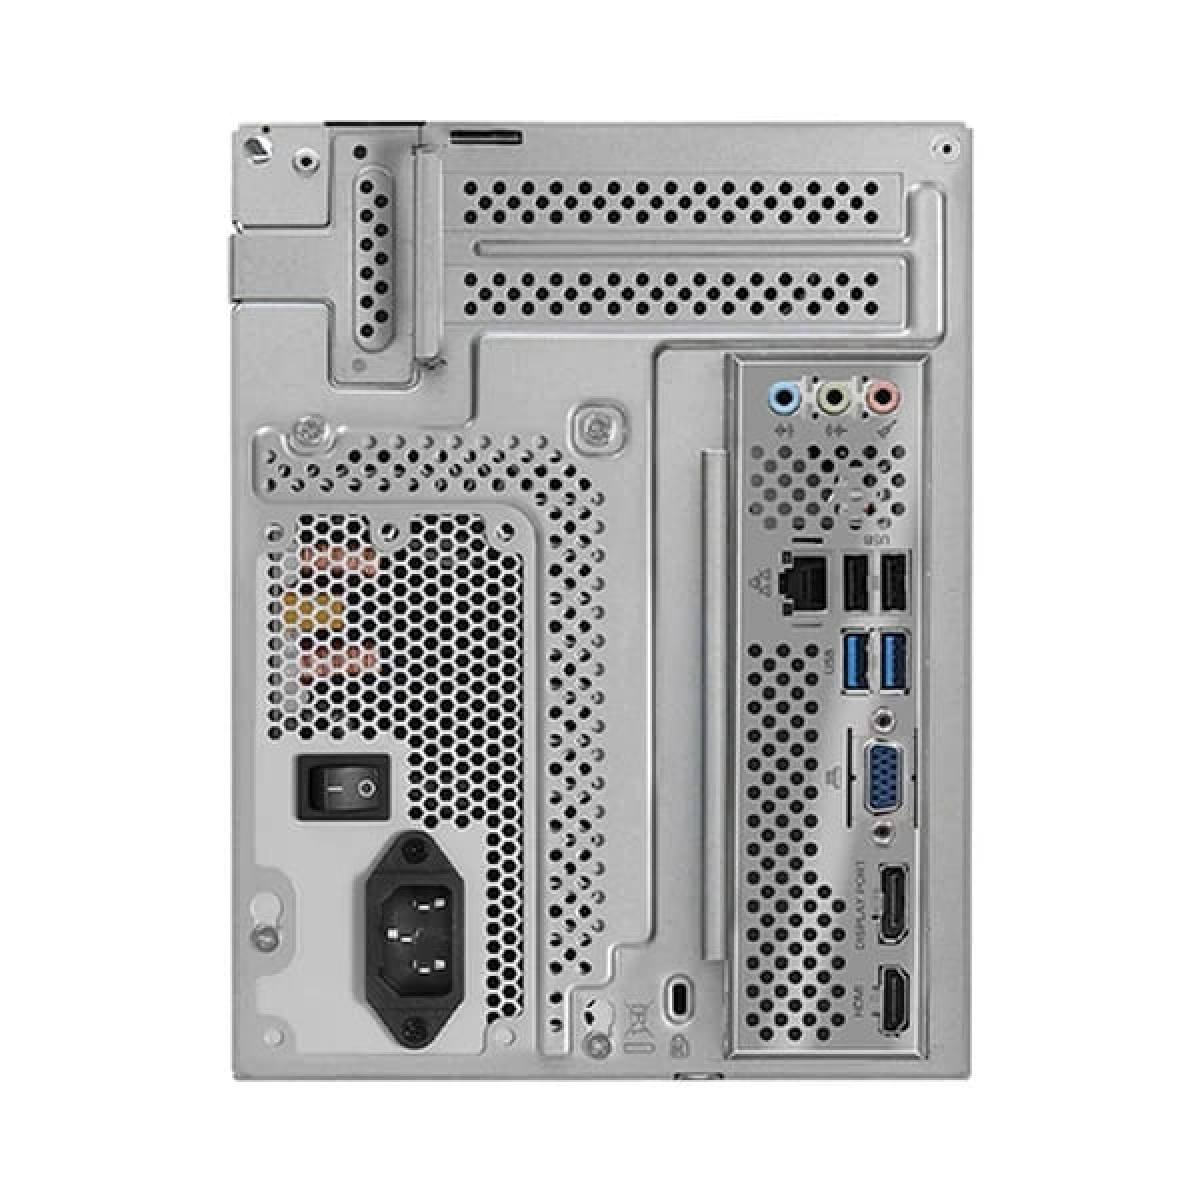 Máy tính bộ Asrock DeskMeet B660 | i3 12100 - 16GB Ram